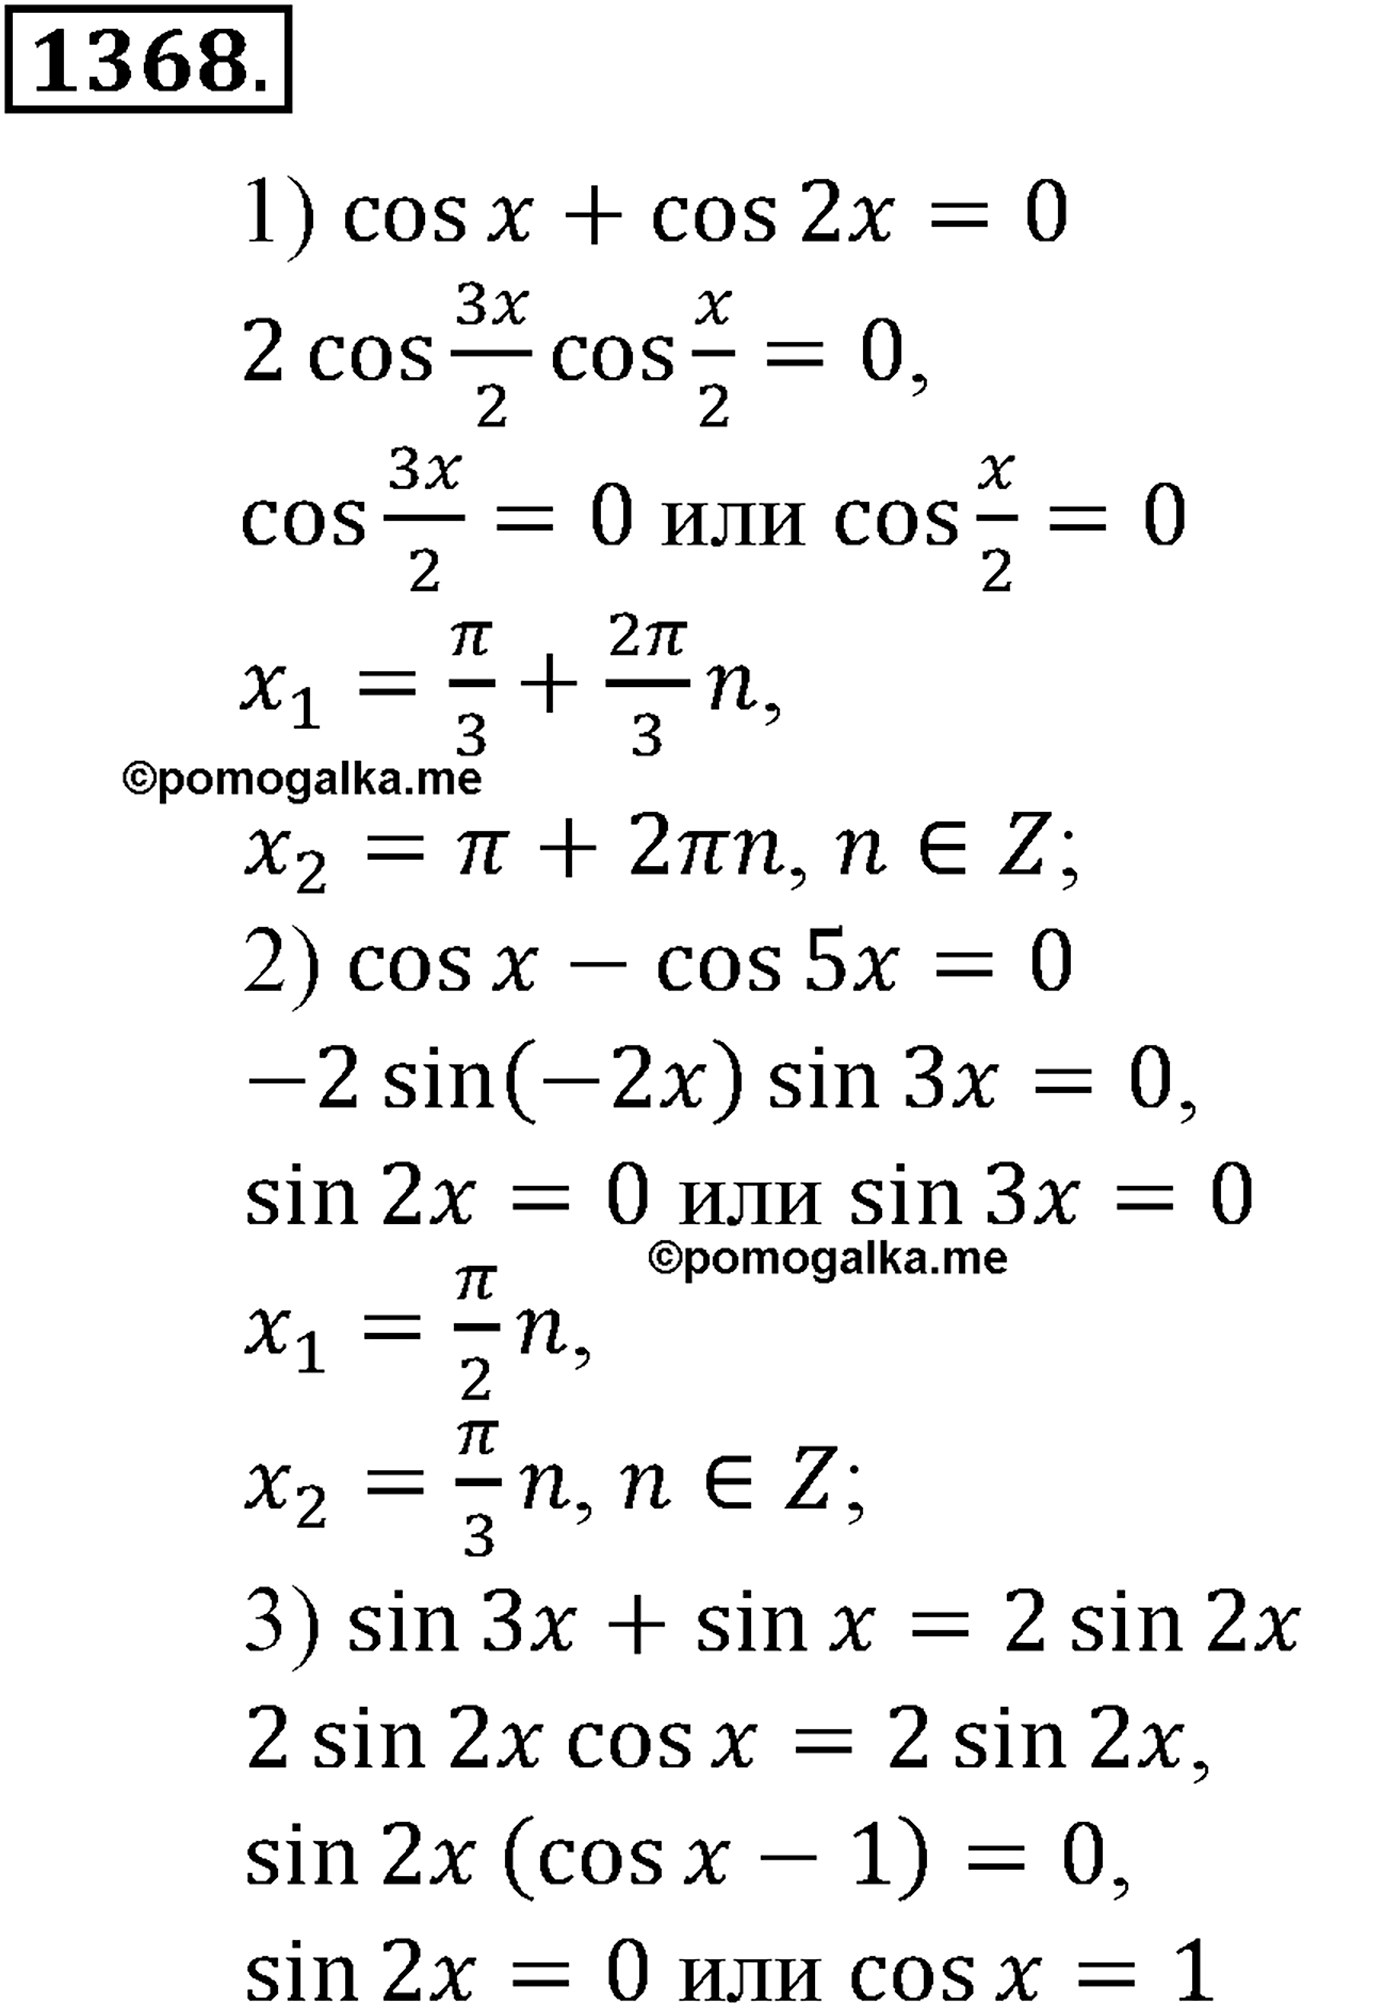 разбор задачи №1368 по алгебре за 10-11 класс из учебника Алимова, Колягина